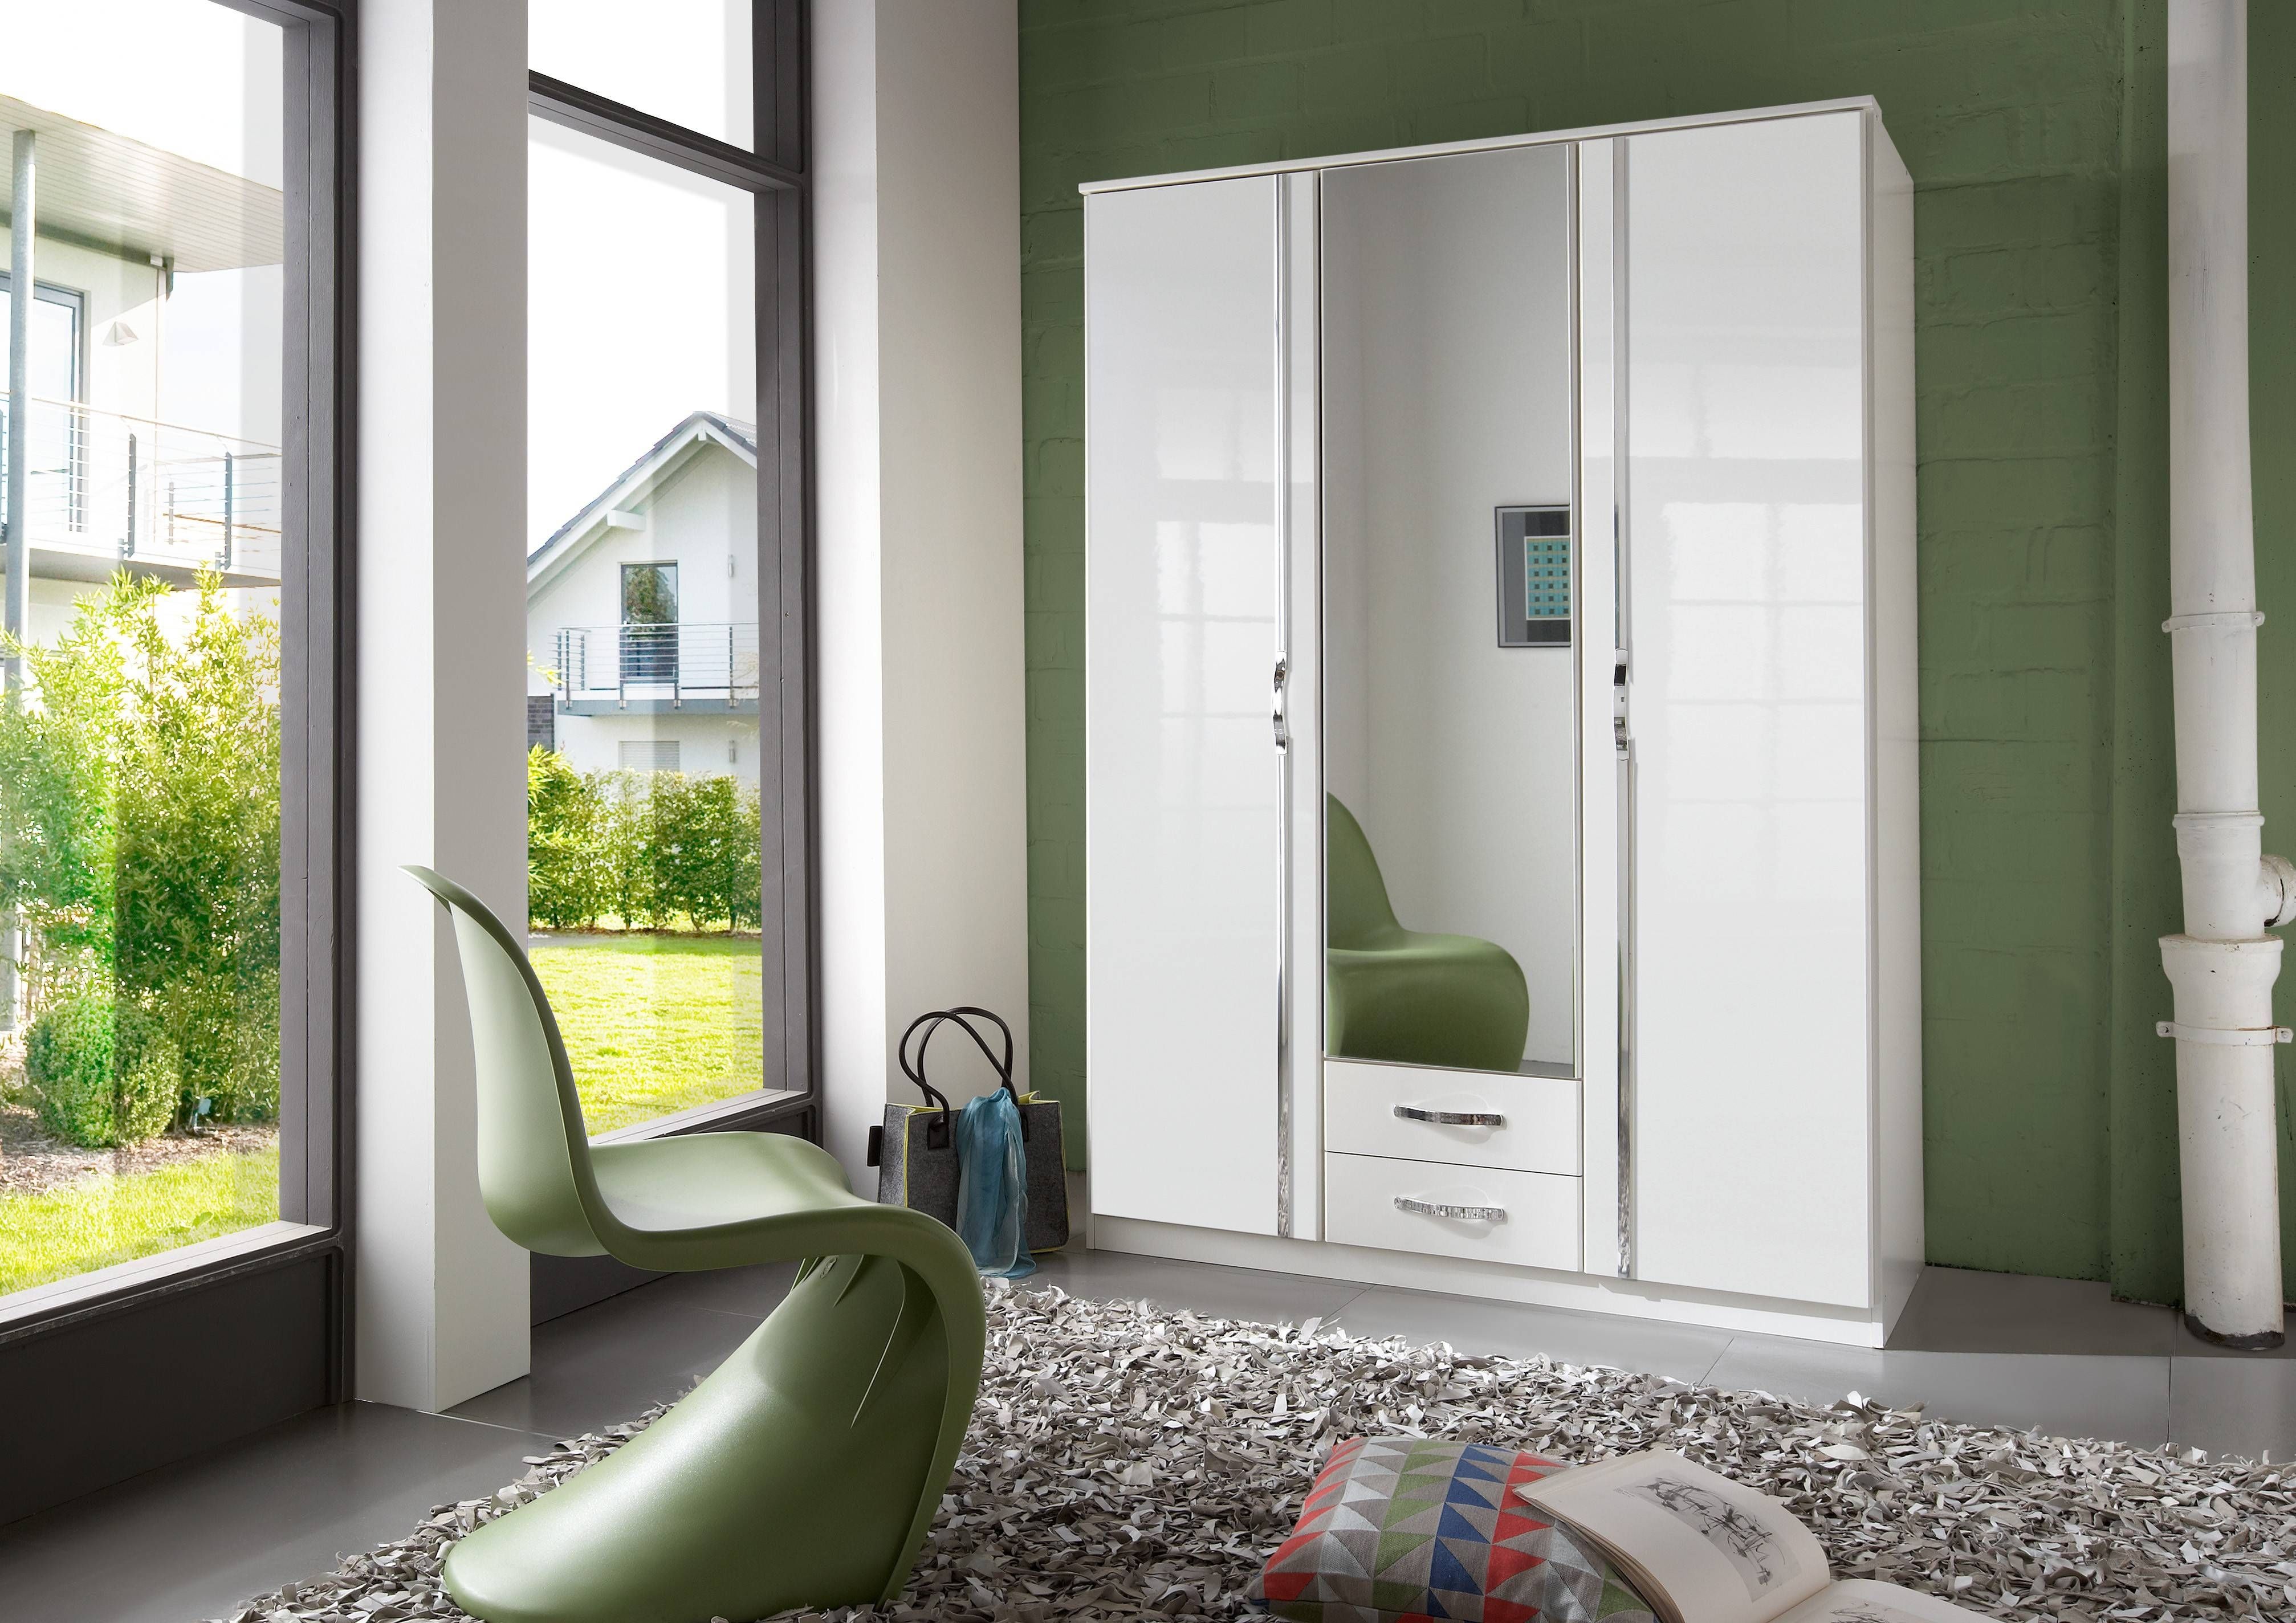 Slumberhaus 'trio' White Gloss, Chrome & Mirror 3 Door 2 Drawer With Wardrobes White Gloss (View 12 of 15)